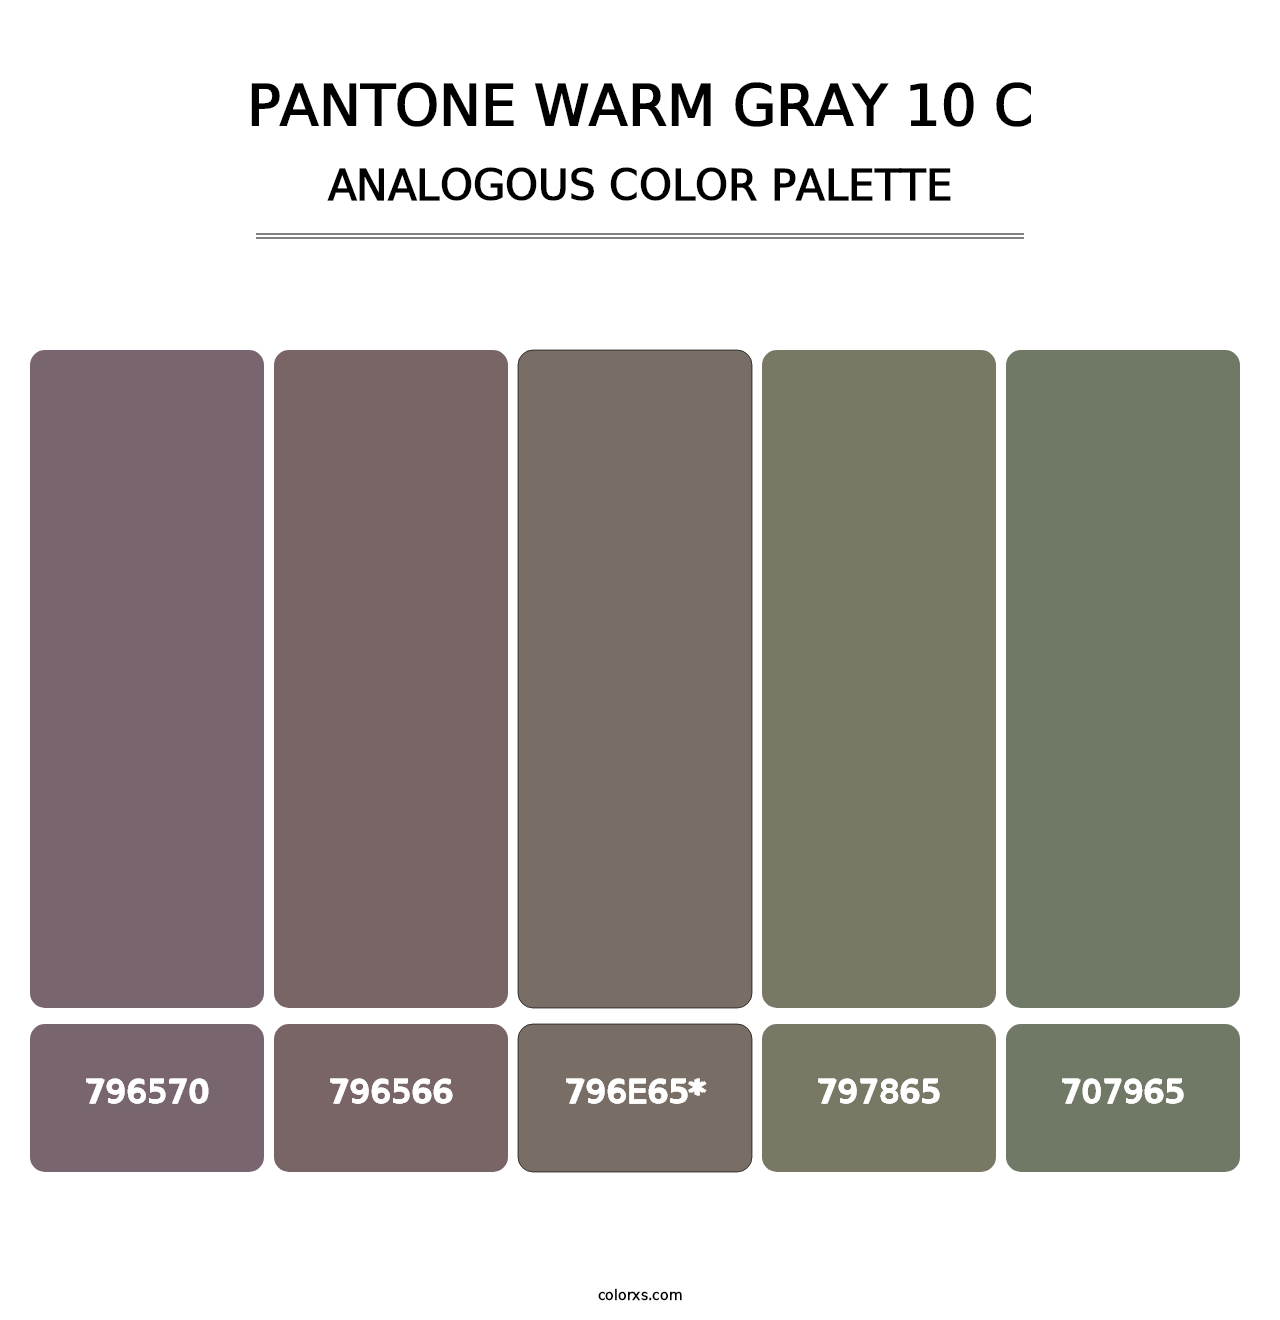 PANTONE Warm Gray 10 C - Analogous Color Palette